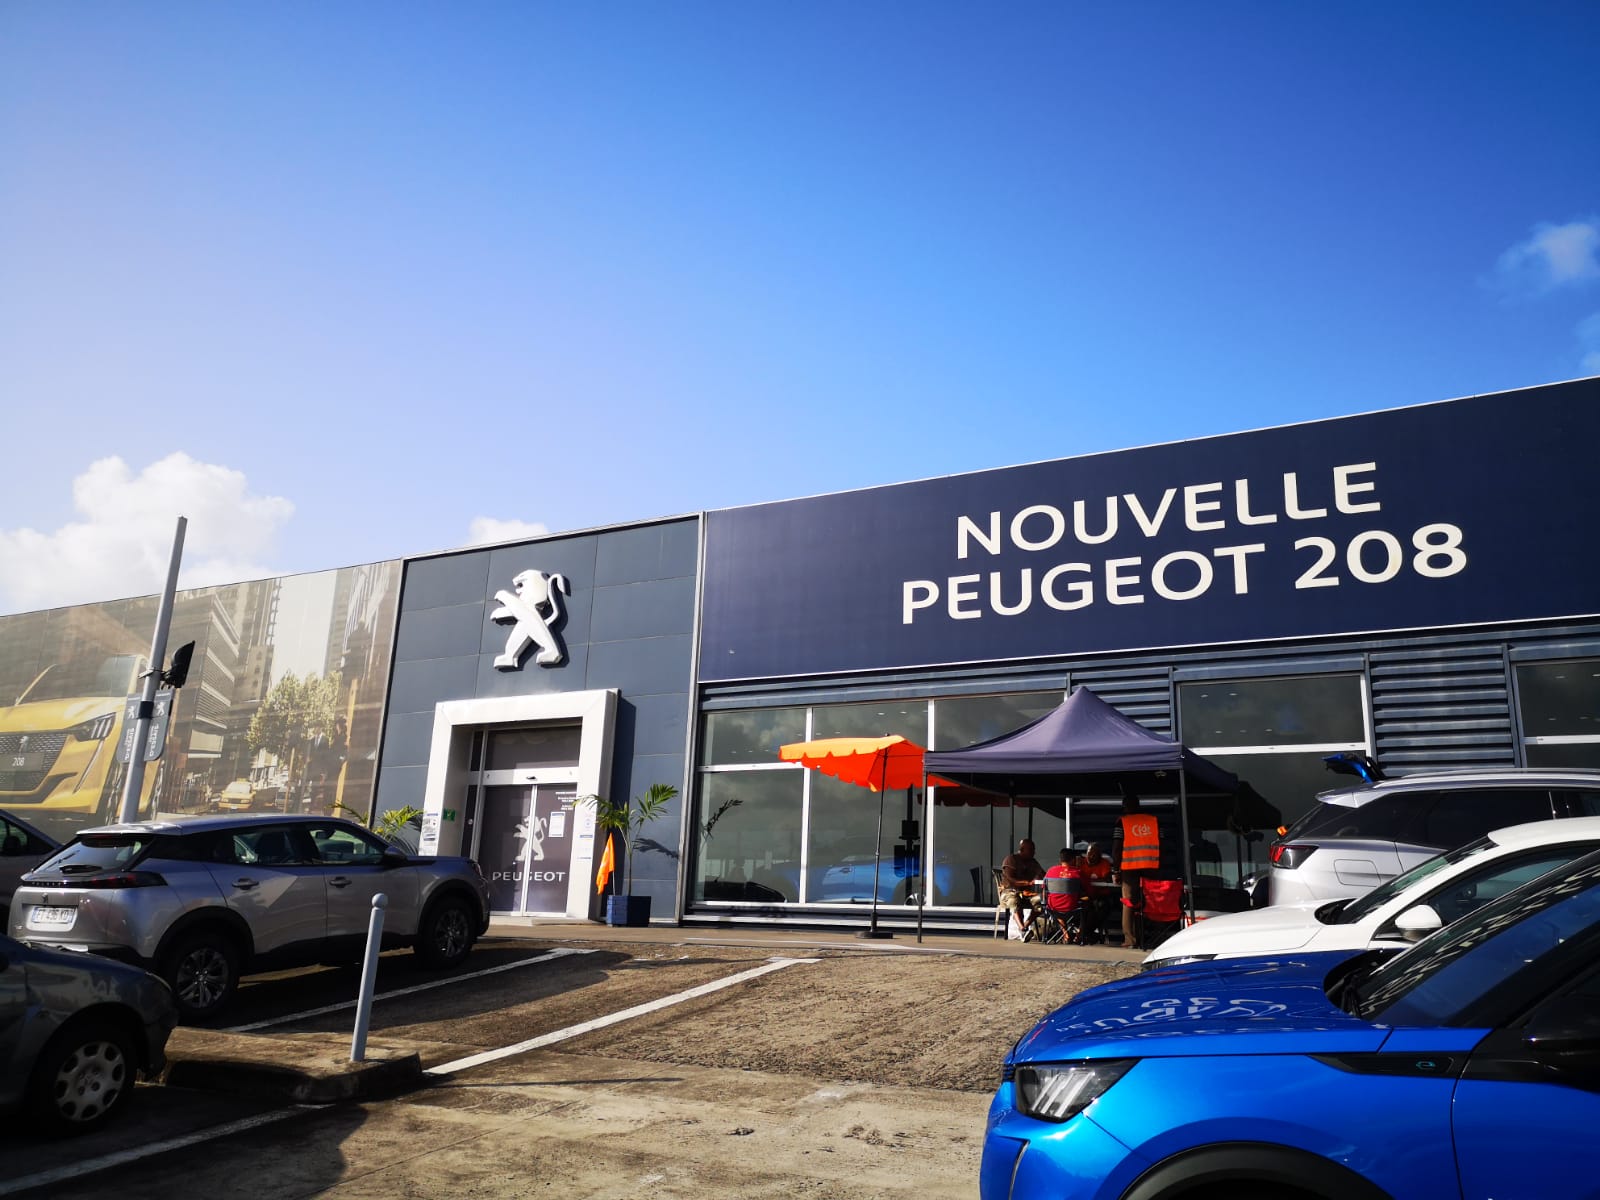     Le combat continue pour les grévistes de Peugeot

